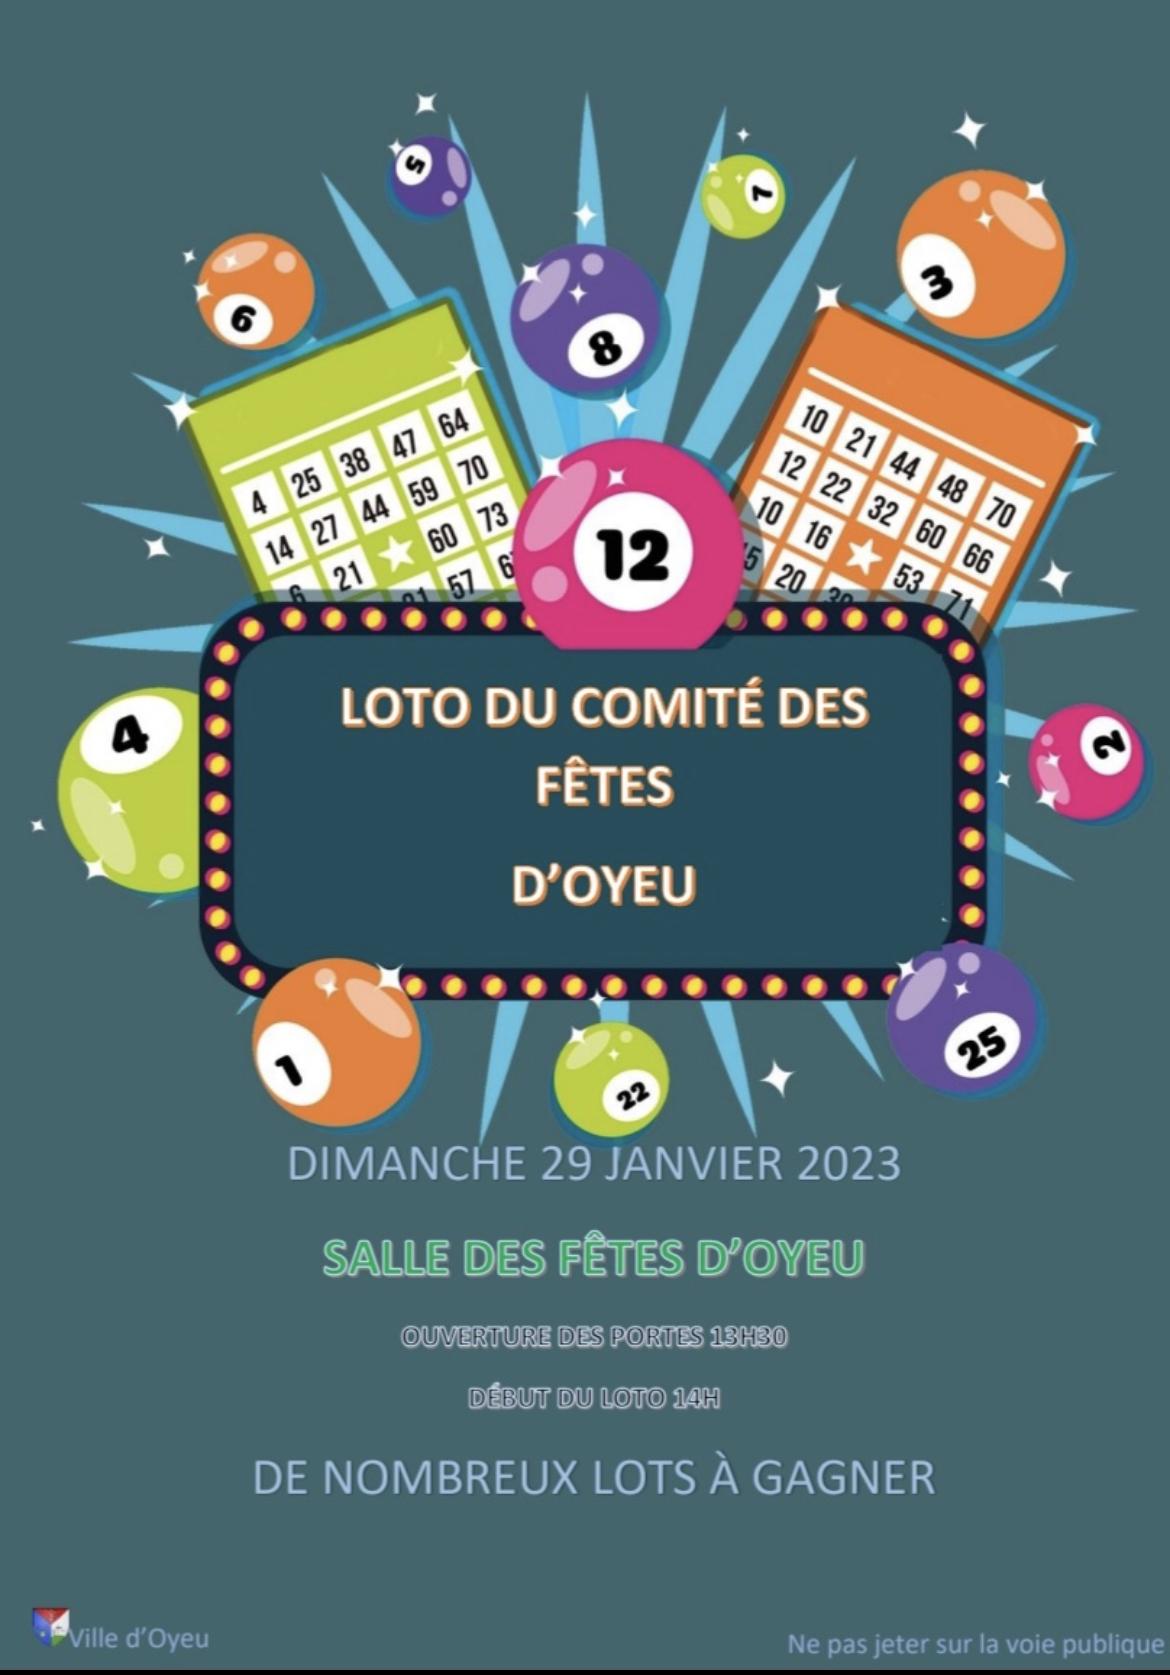 Image de couverture - Loto du comité des fêtes d’Oyeu le 29 janv 2023